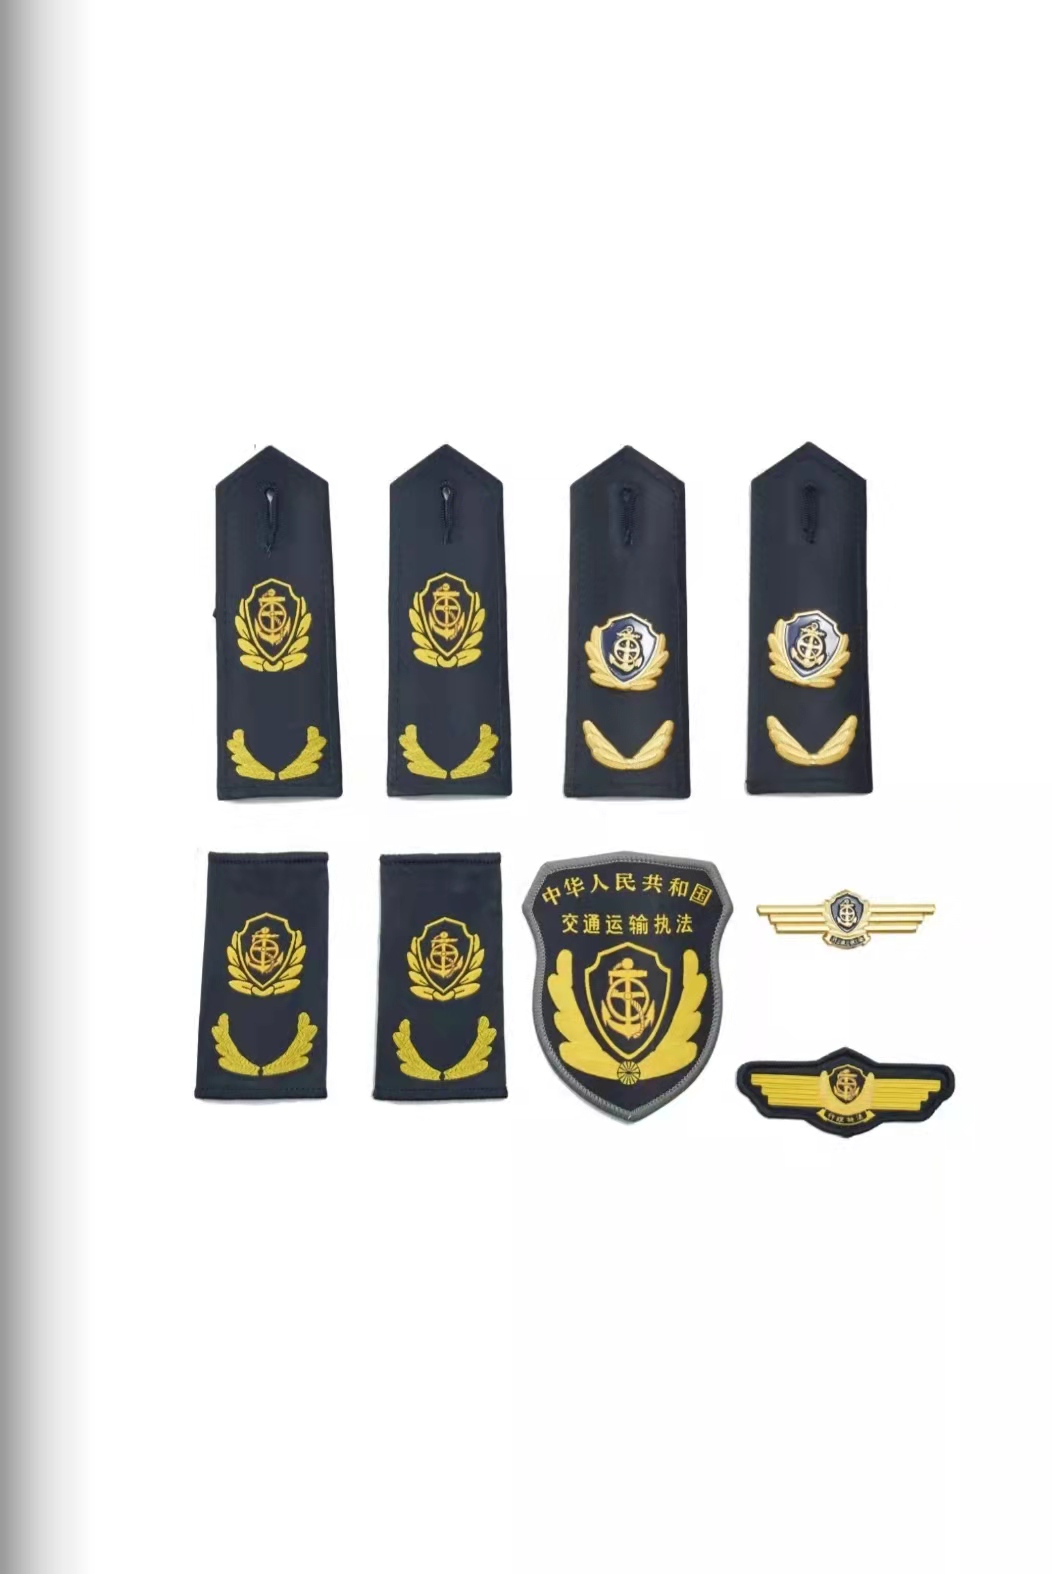 南京六部门统一交通运输执法服装标志